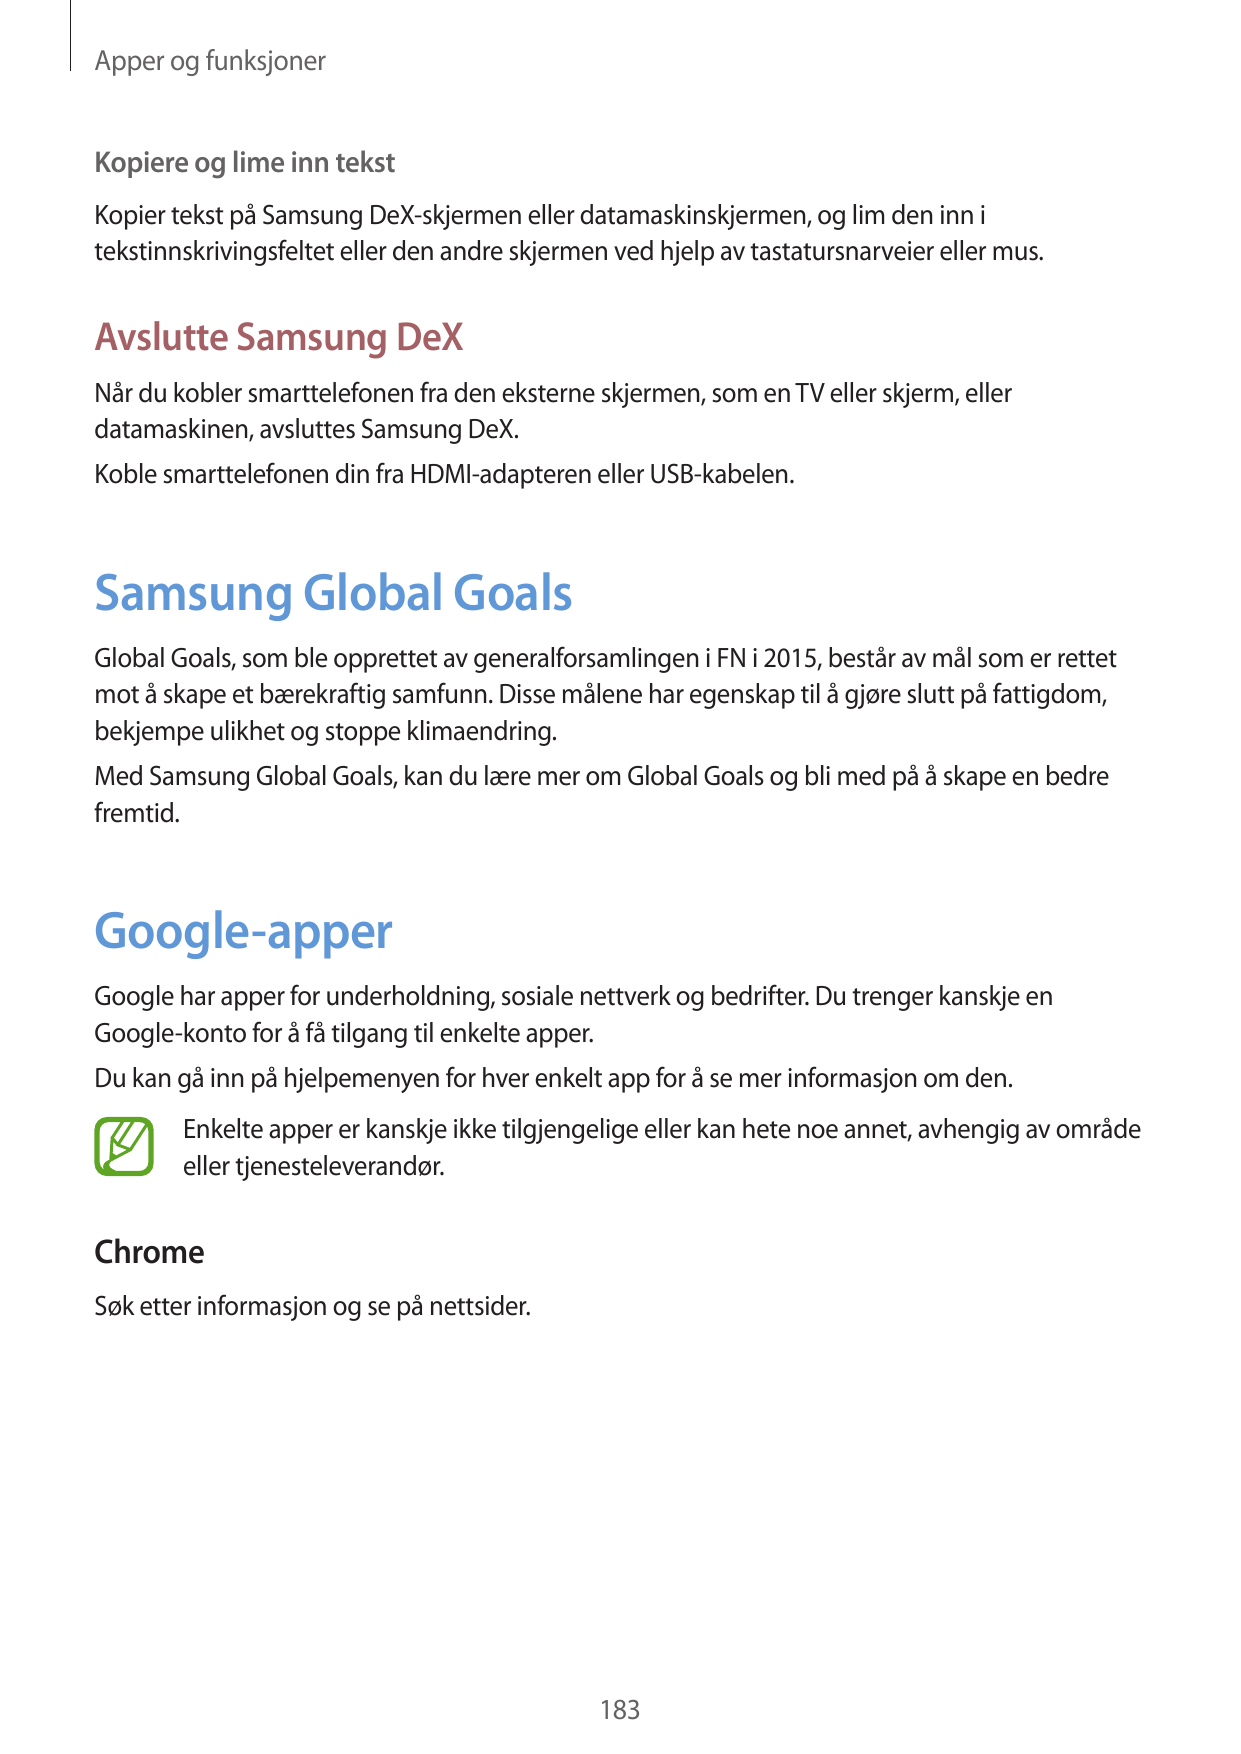 Apper og funksjonerKopiere og lime inn tekstKopier tekst på Samsung DeX-skjermen eller datamaskinskjermen, og lim den inn itekst